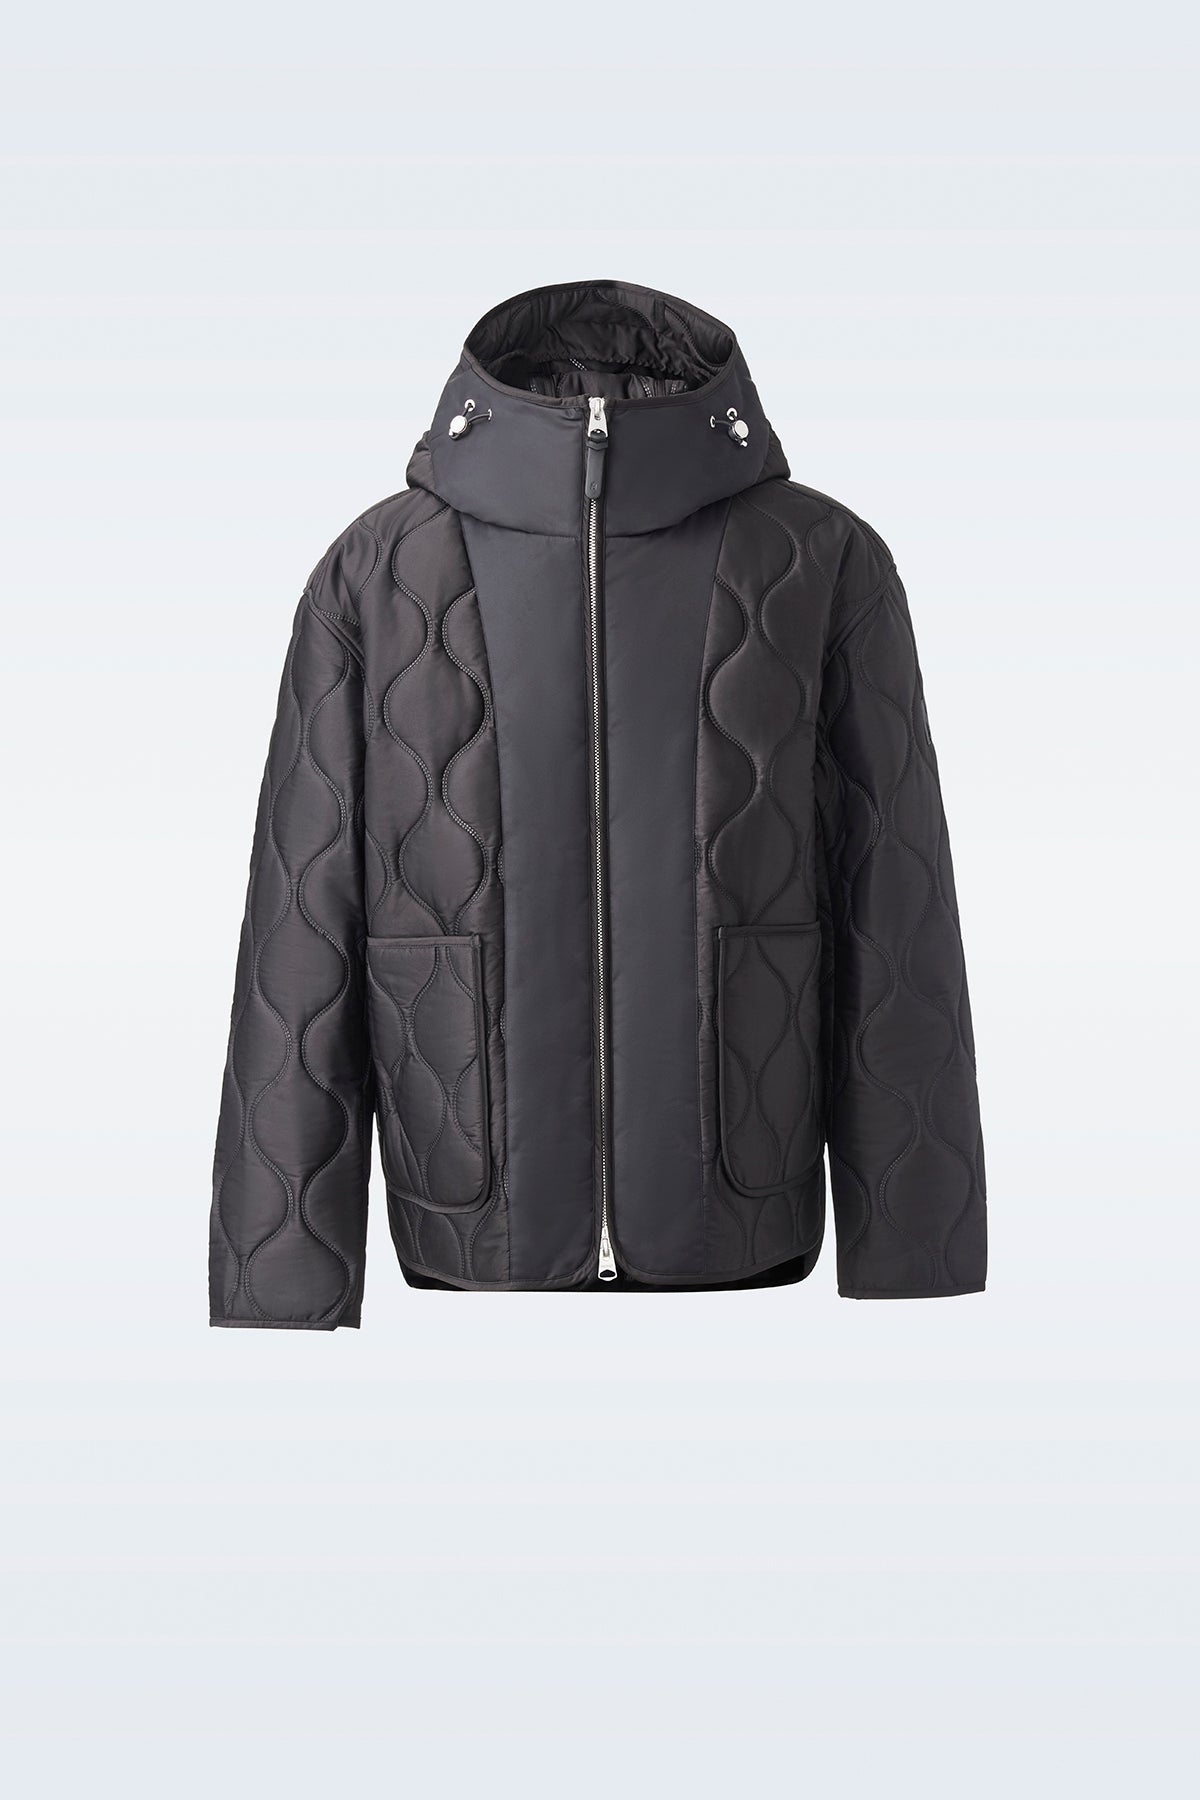 Shop Louis Vuitton Men's Grey Down Jackets